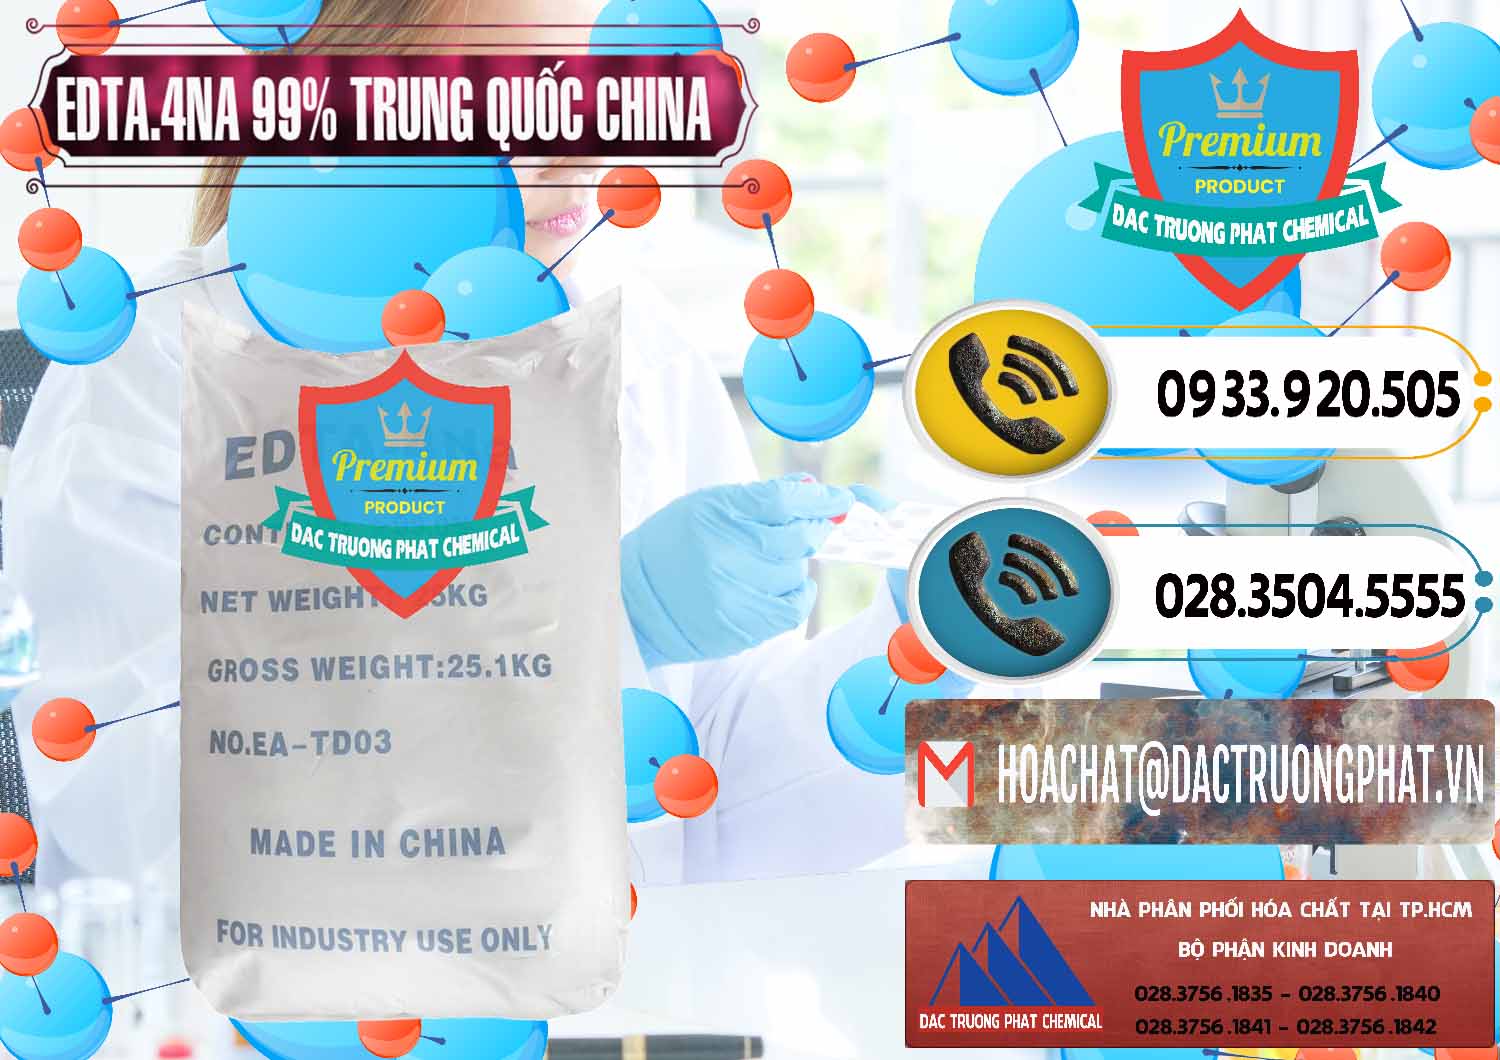 Công ty kinh doanh & bán EDTA.4NA - EDTA Muối 99% Trung Quốc China - 0292 - Chuyên cung cấp và nhập khẩu hóa chất tại TP.HCM - hoachatdetnhuom.vn